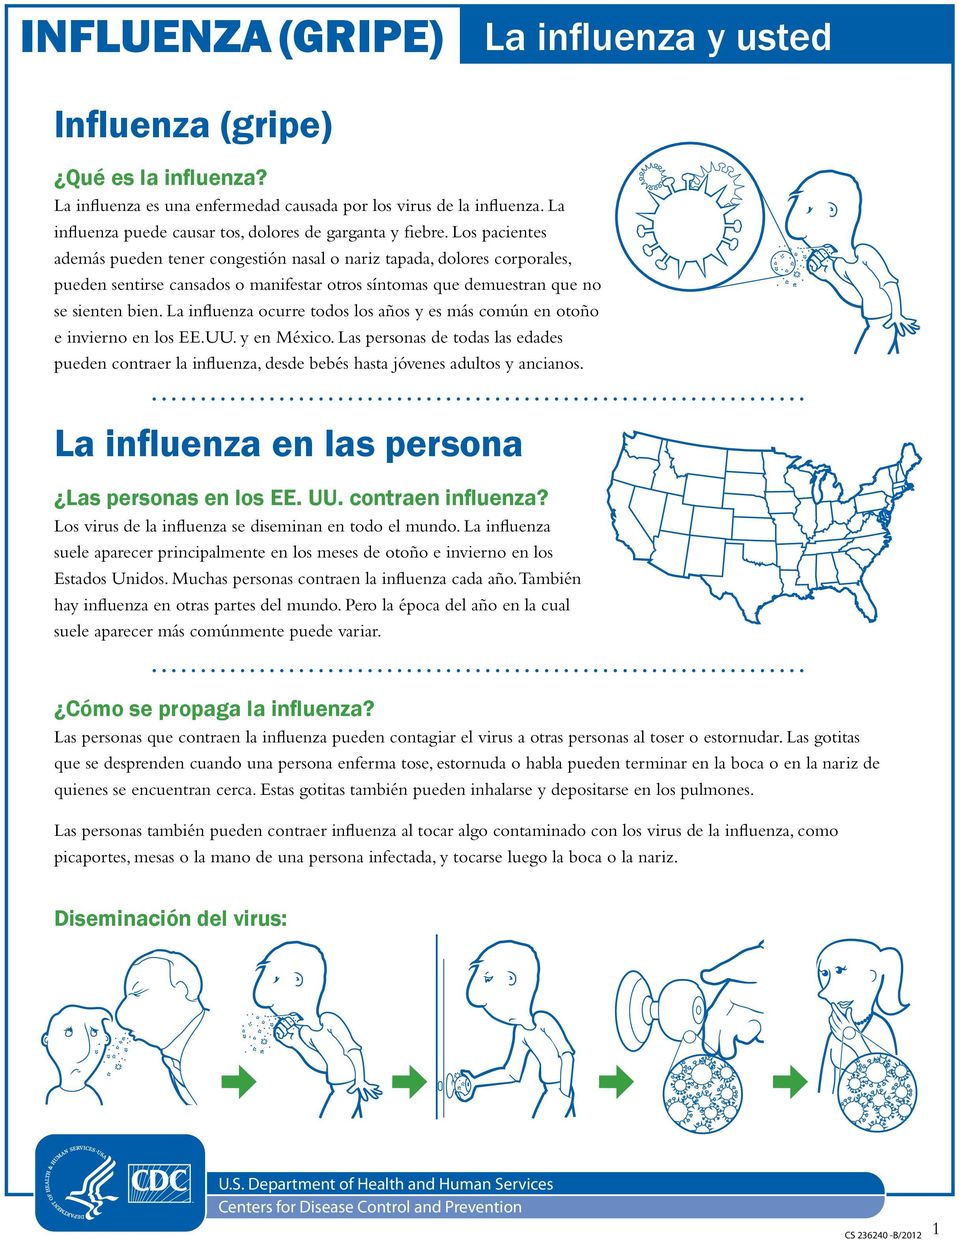 La influenza ocurre todos los años y es más común en otoño e invierno en los EE.UU. y en México.